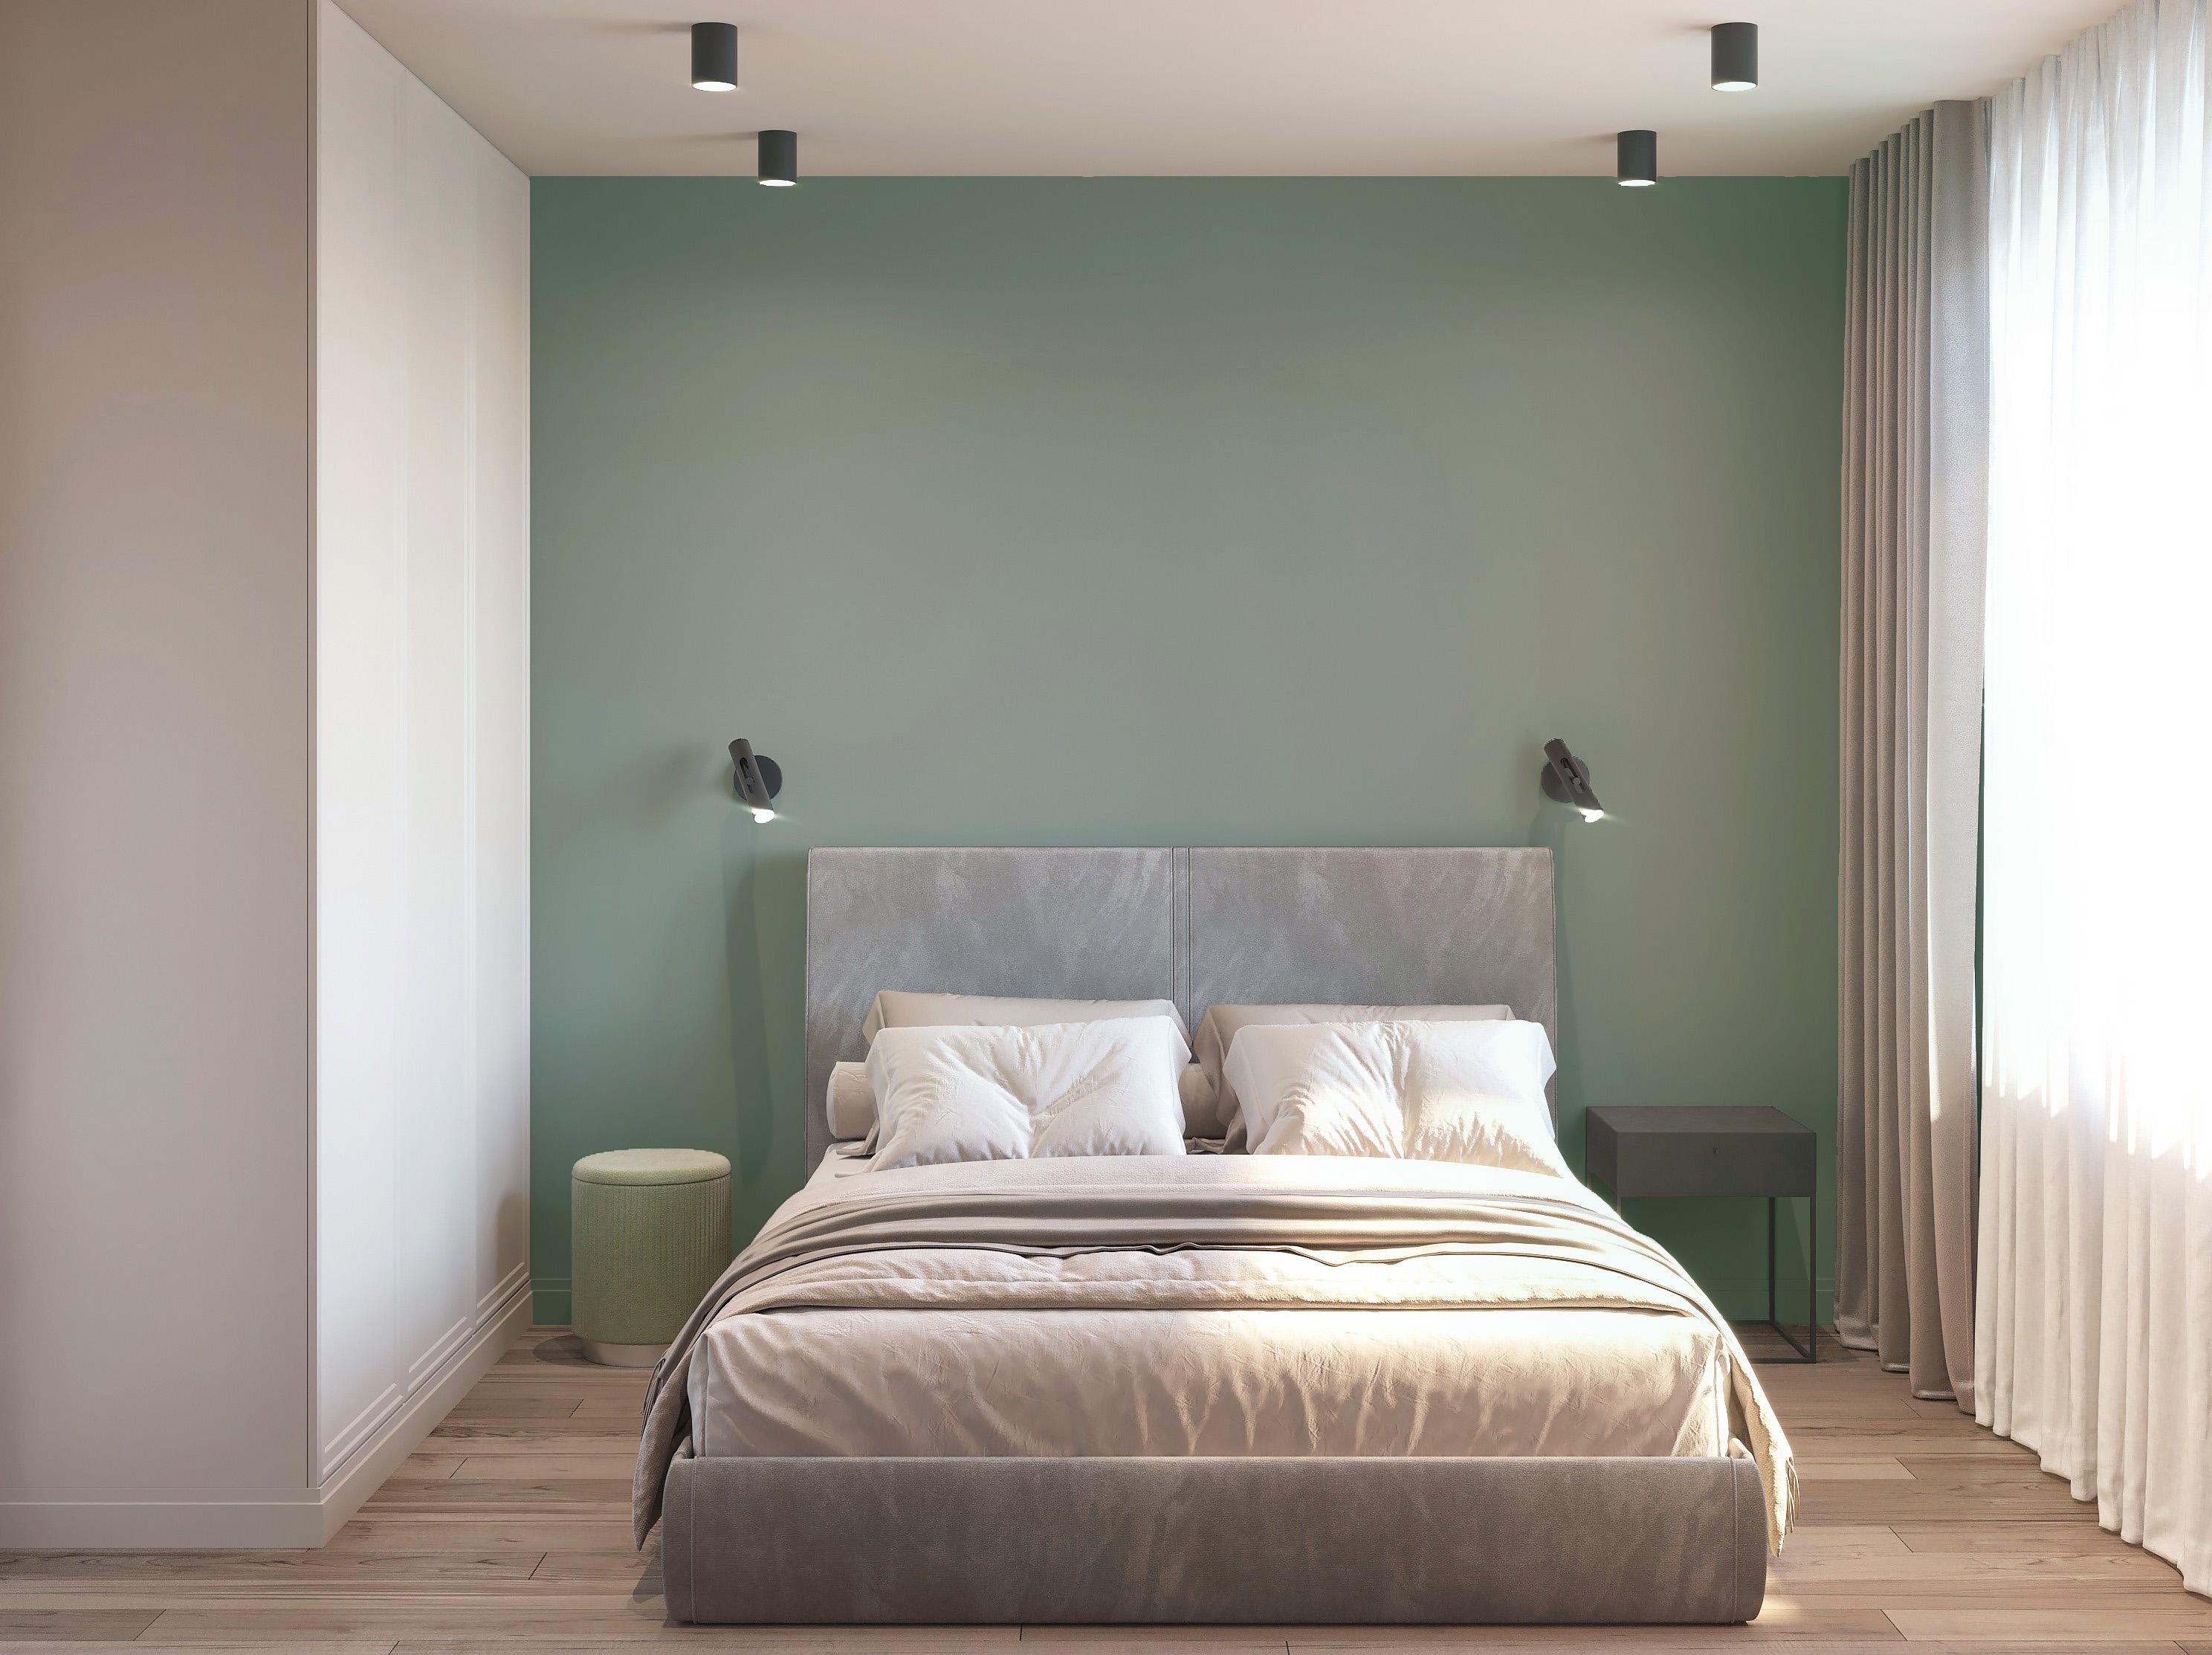 Интерьер спальни с рейками с подсветкой, подсветкой настенной и подсветкой светодиодной